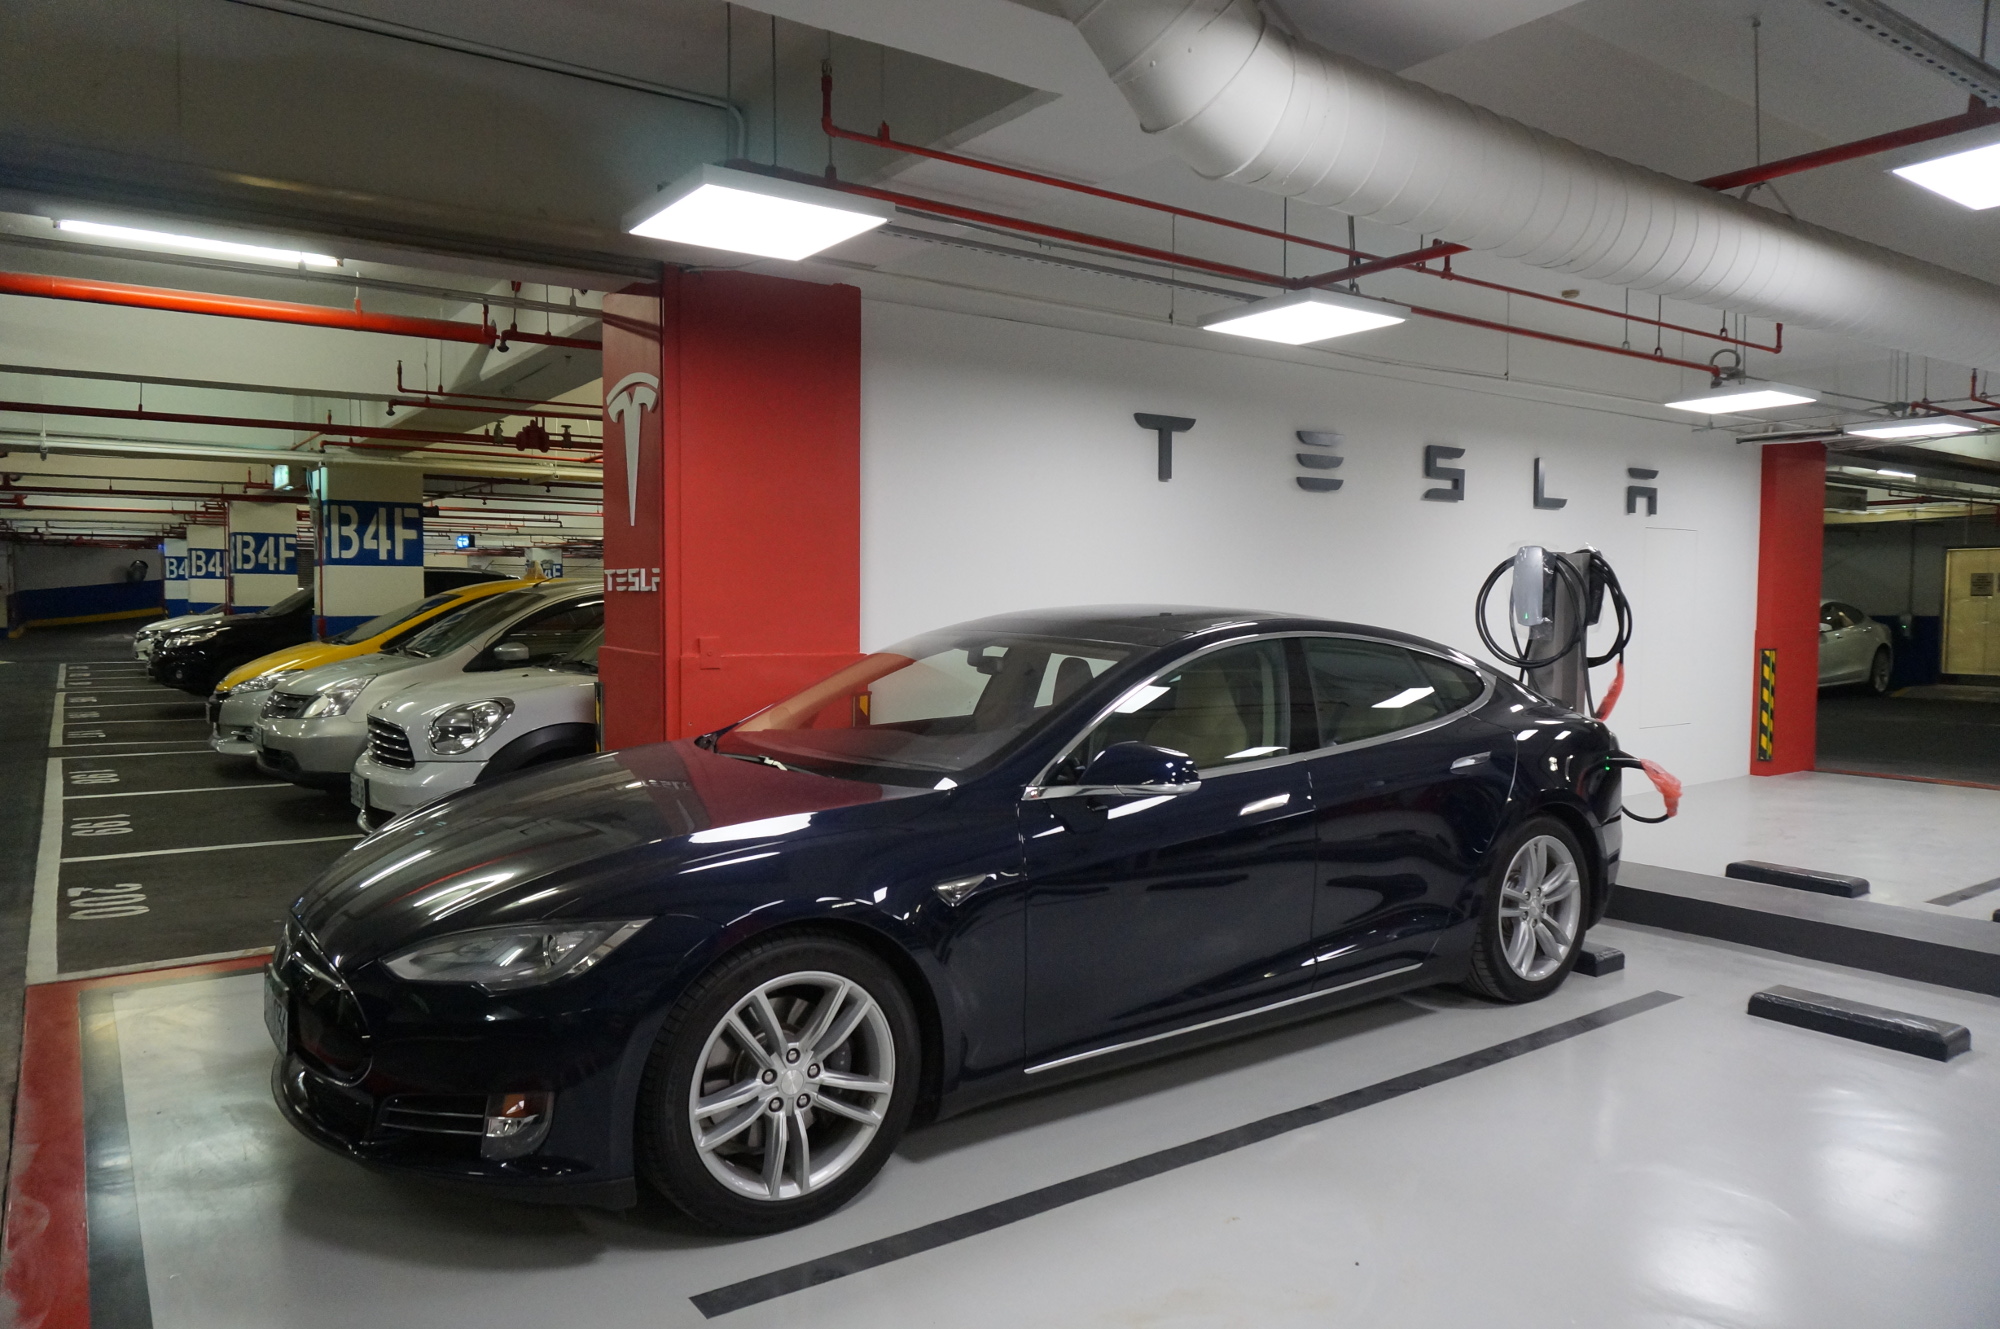 Tesla-Parking-in-Department-Store